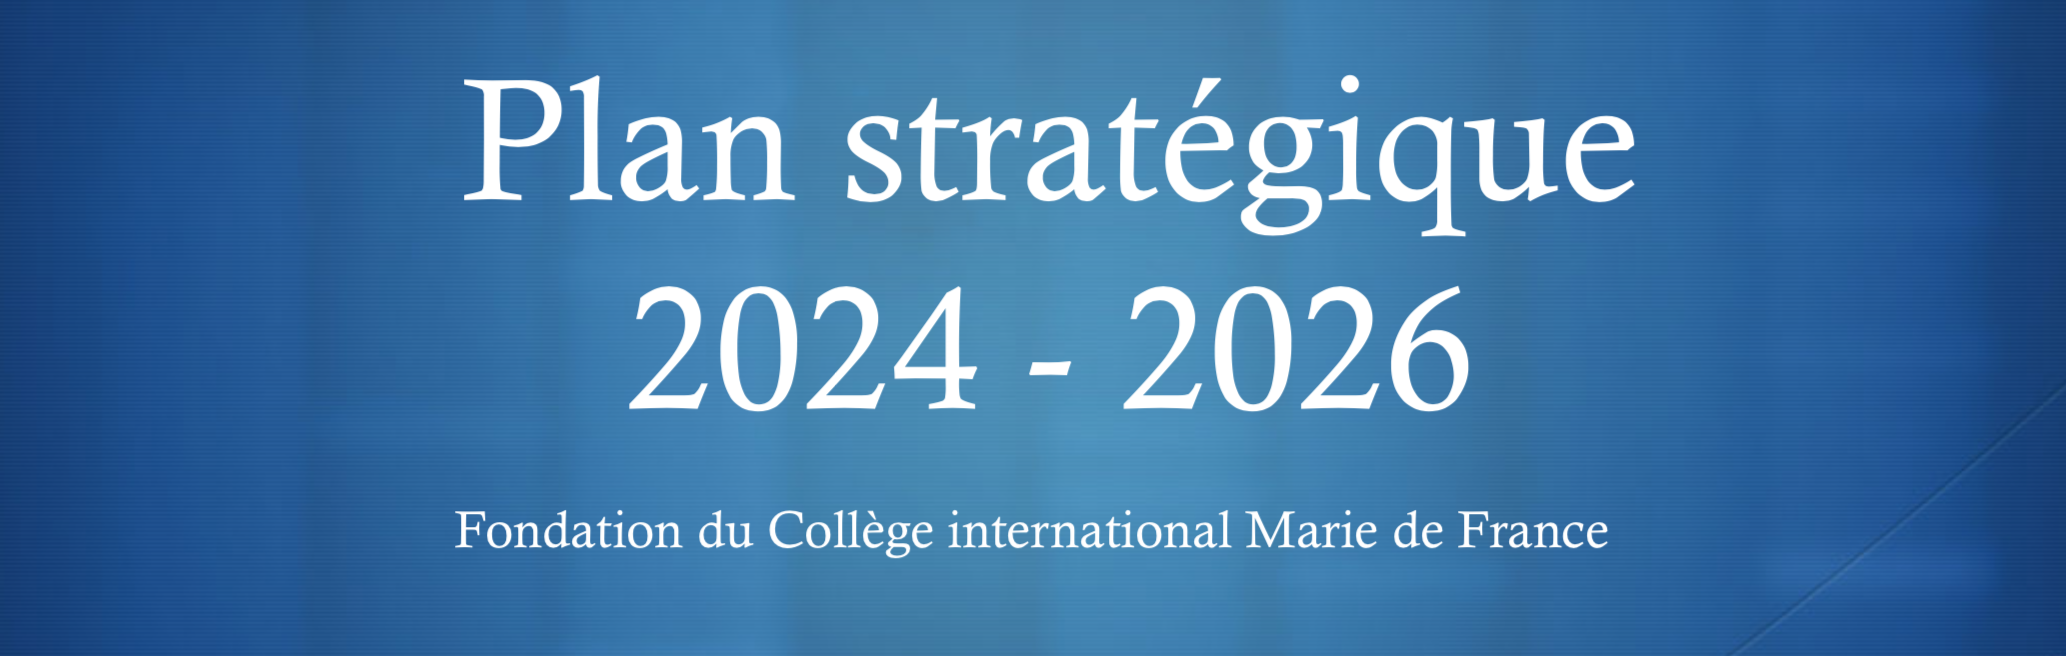 You are currently viewing Plan stratégique de la Fondation du CiMF 2024-2026